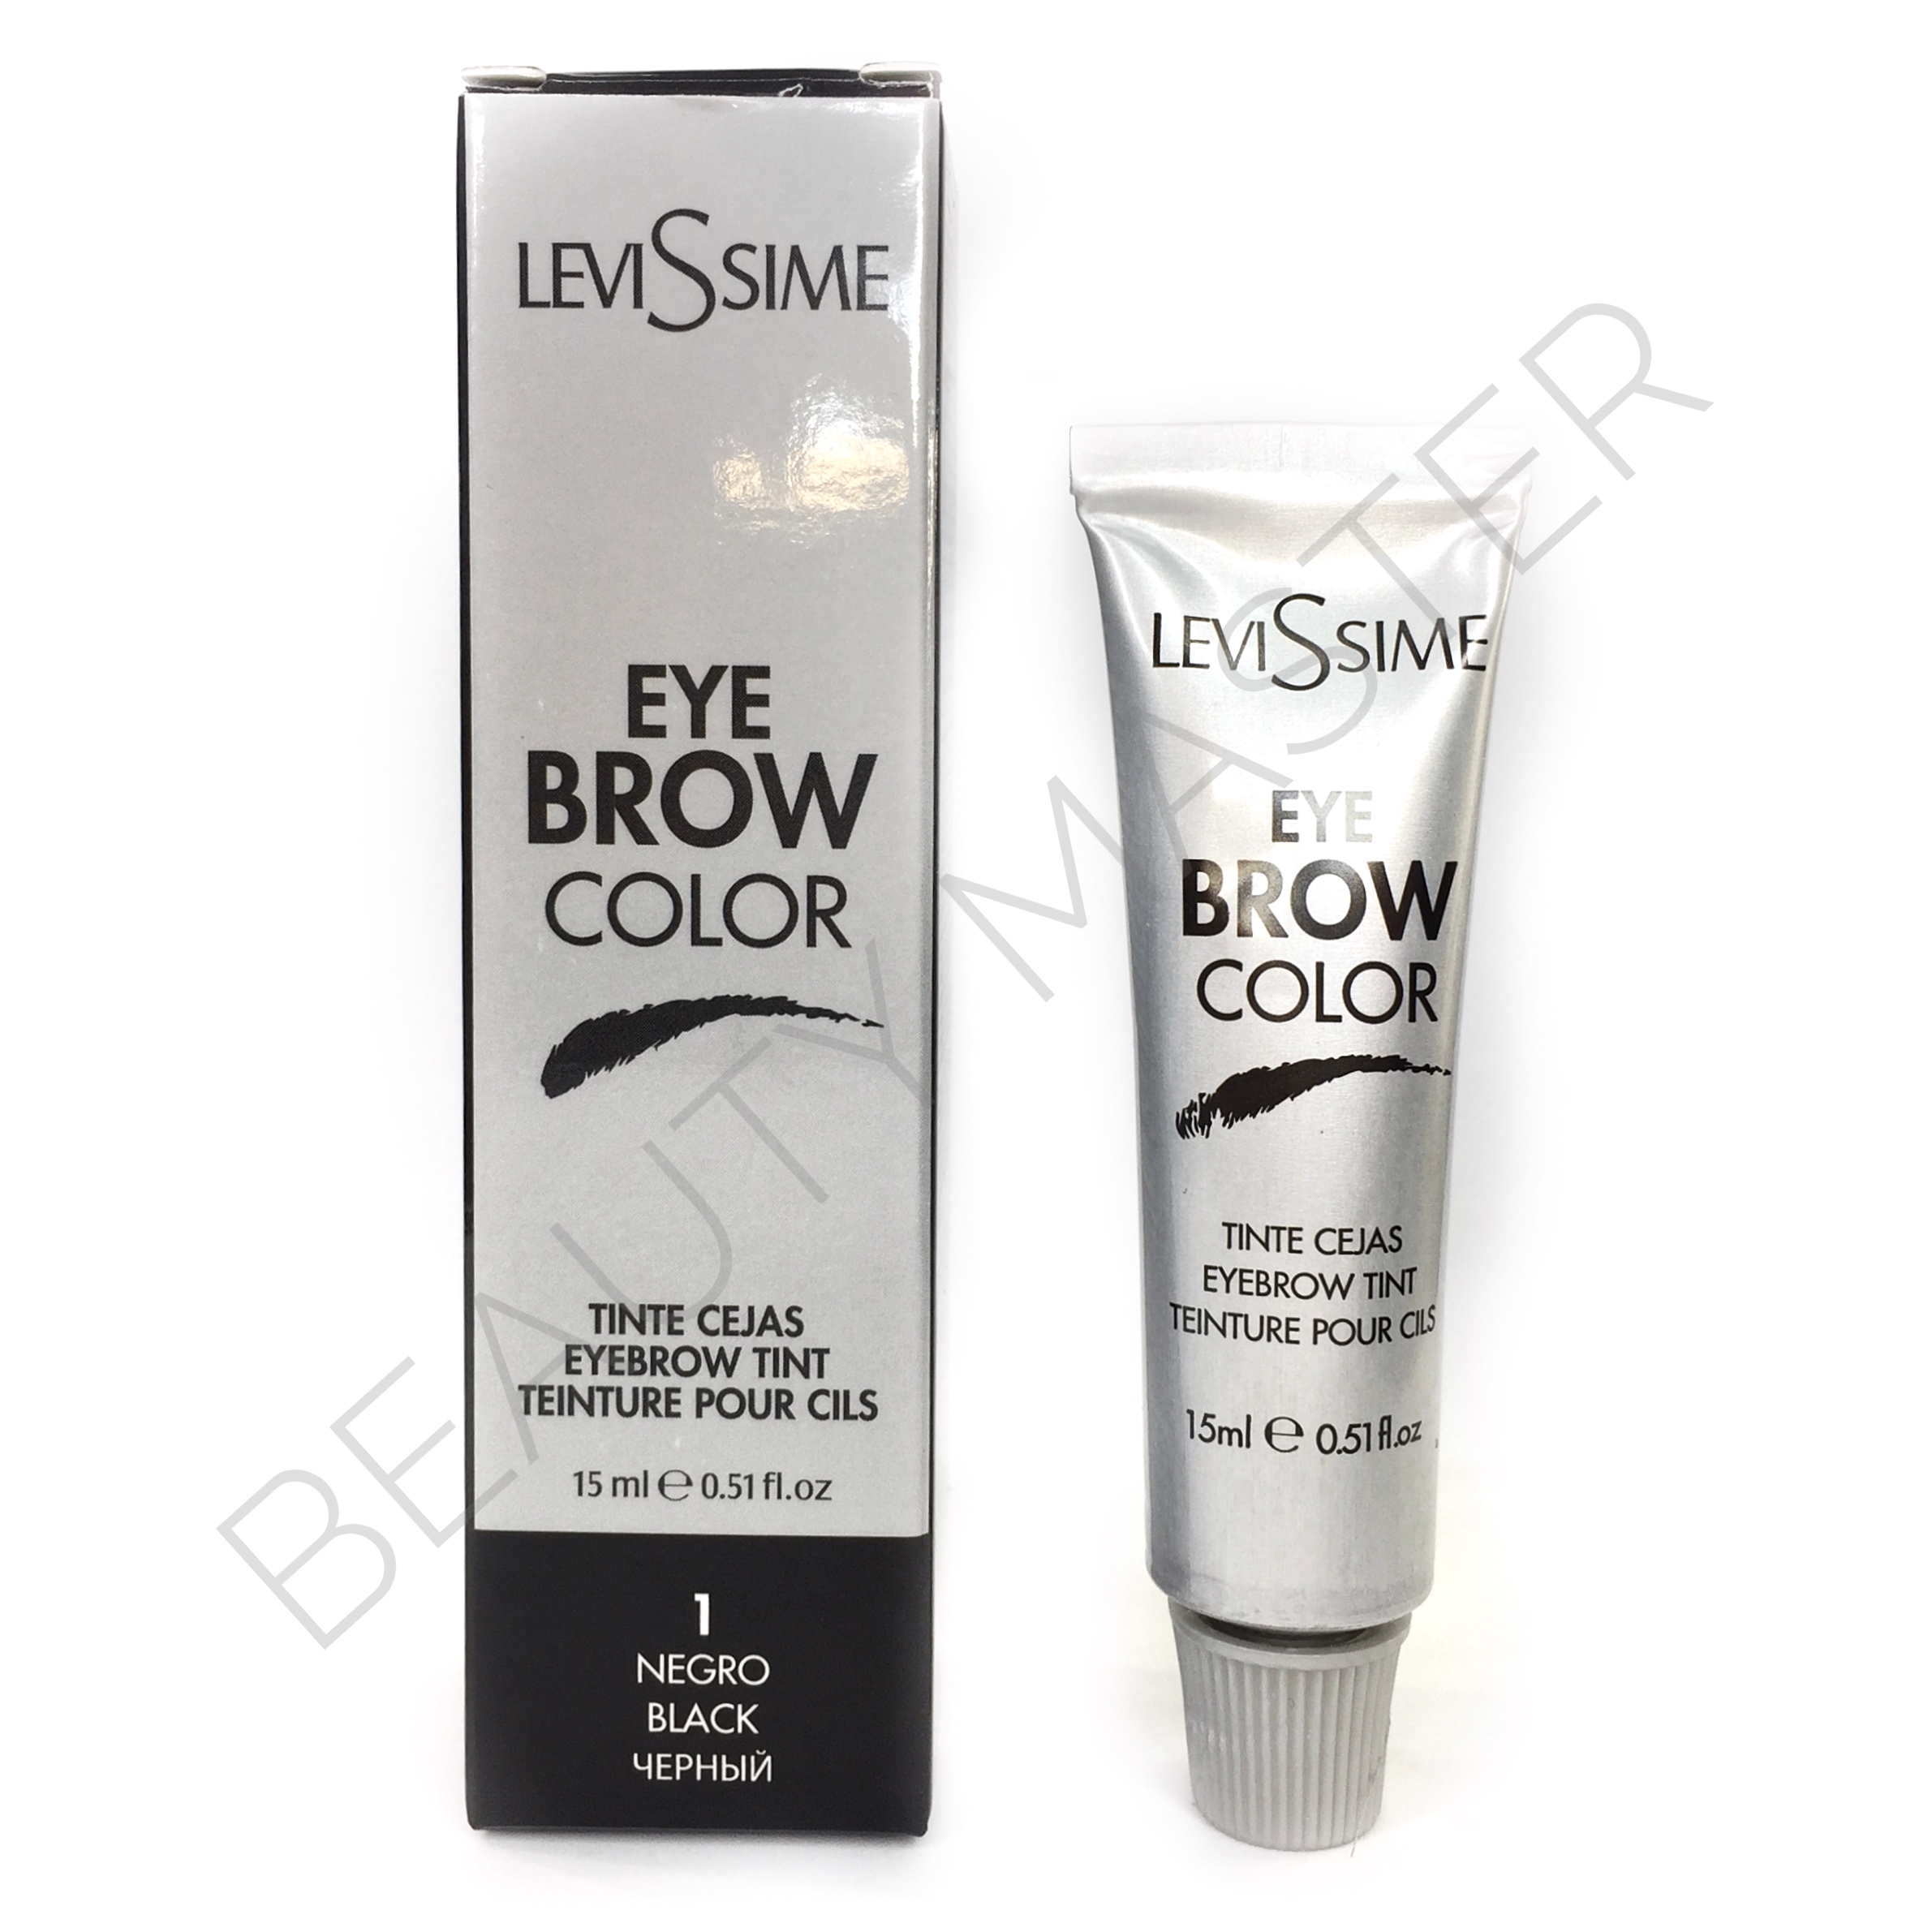 Levissime Eye brow color краска 1 черный